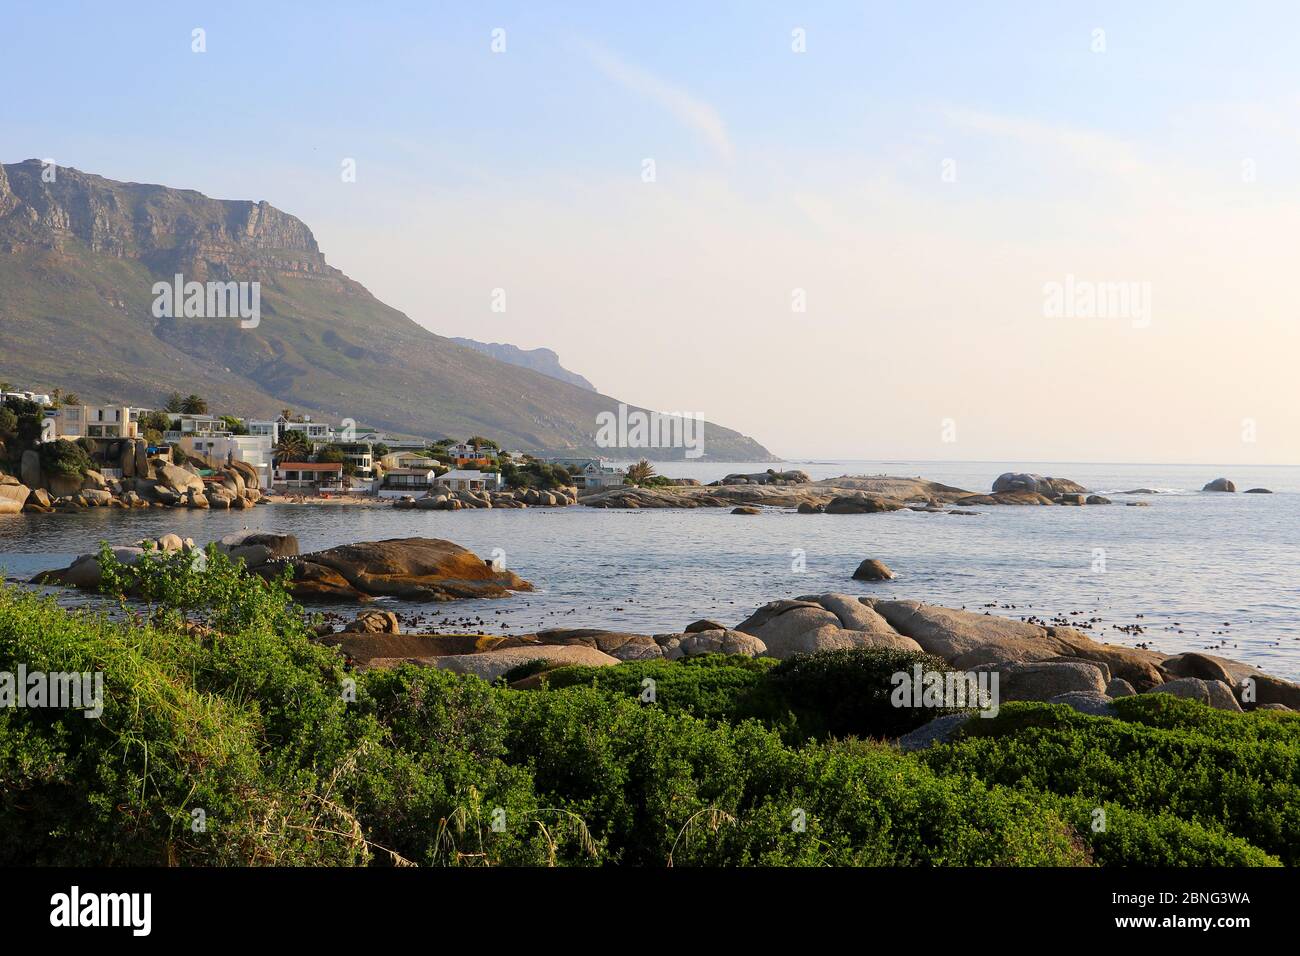 Proprietà e spiagge a Camps Bay, Città del Capo, Sud Africa in una giornata estiva limpida, con persone sulla spiaggia e le montagne sullo sfondo Foto Stock